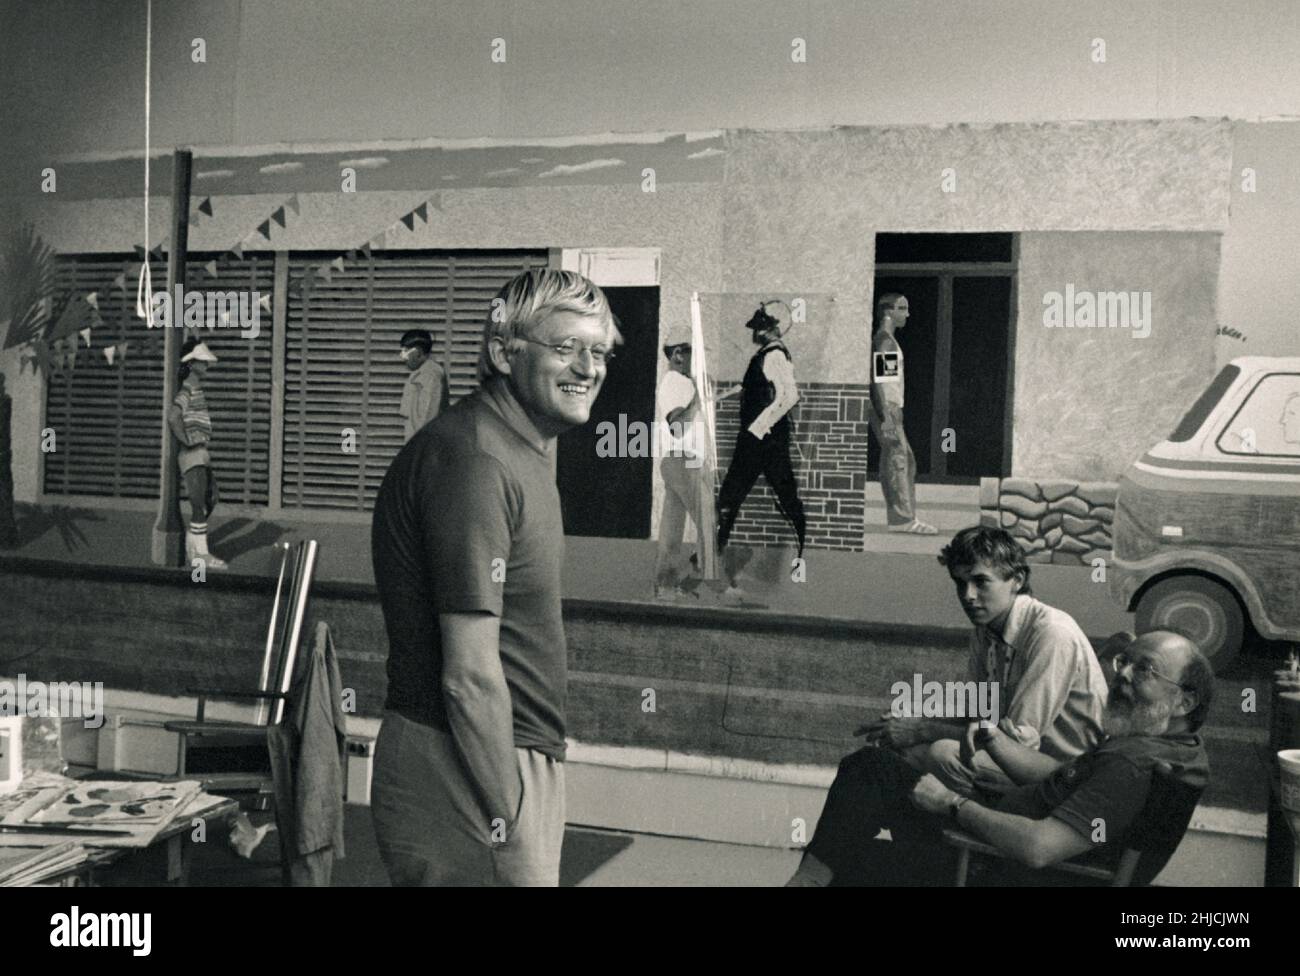 Il pittore David Hockney con Henry Geldzahler e un amico al suo studio Pico Boulevard a Los Angeles, California, 1979. Hockney è stato un importante contributore al British Pop art Movement degli anni '60, e vive oggi a Los Angeles, California. Geldzahler era un curatore che si mescolava con famosi artisti del suo tempo. Foto Stock